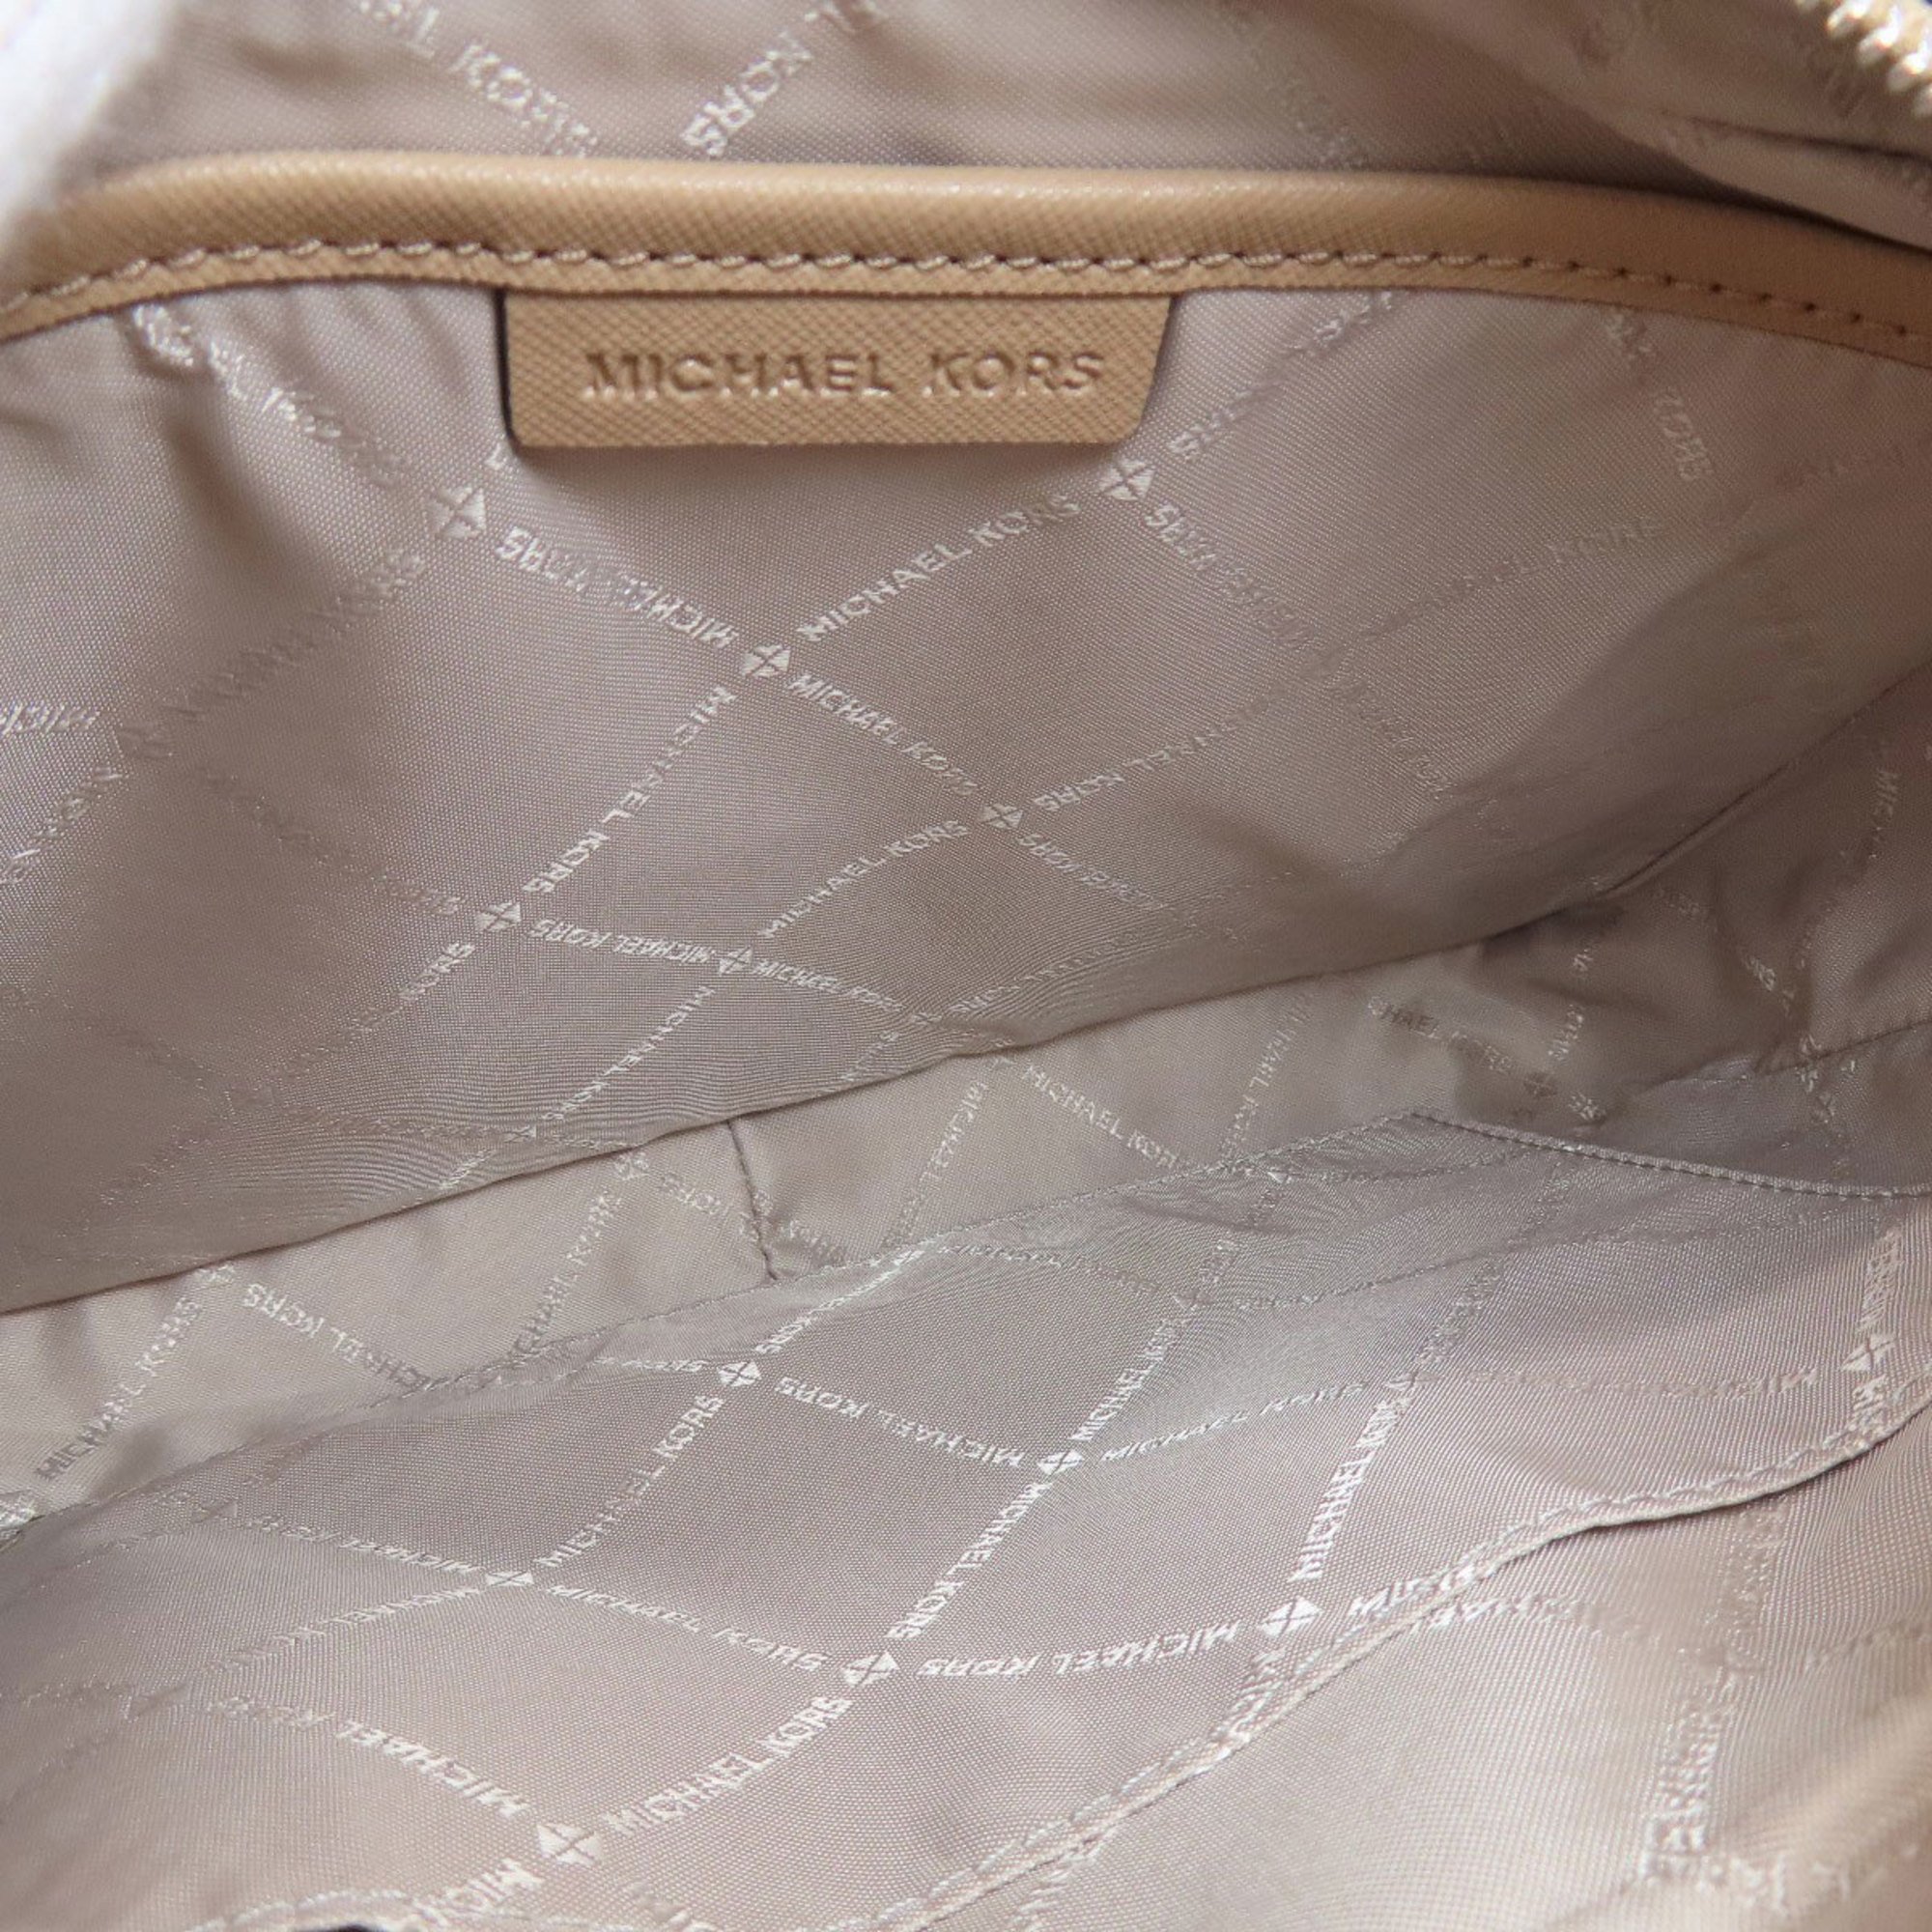 Michael Kors shoulder bag for women